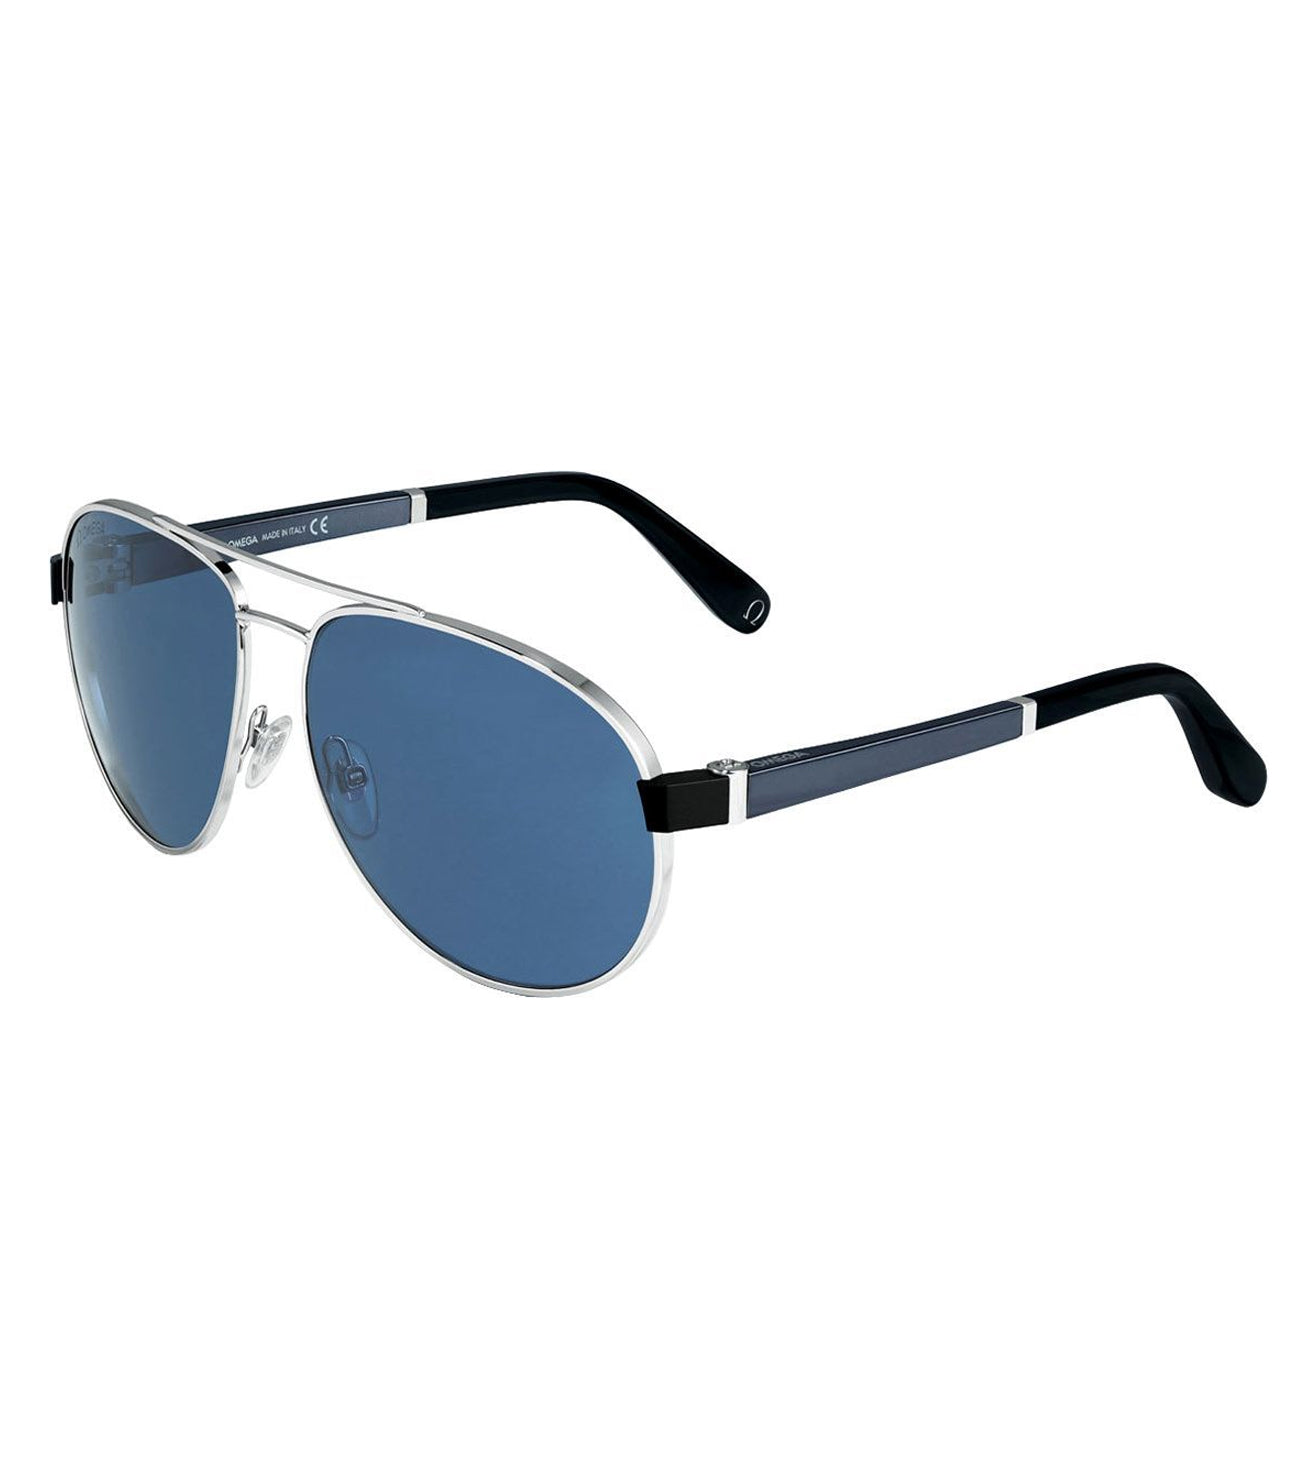 Omega Men's Blue Aviator Sunglasses